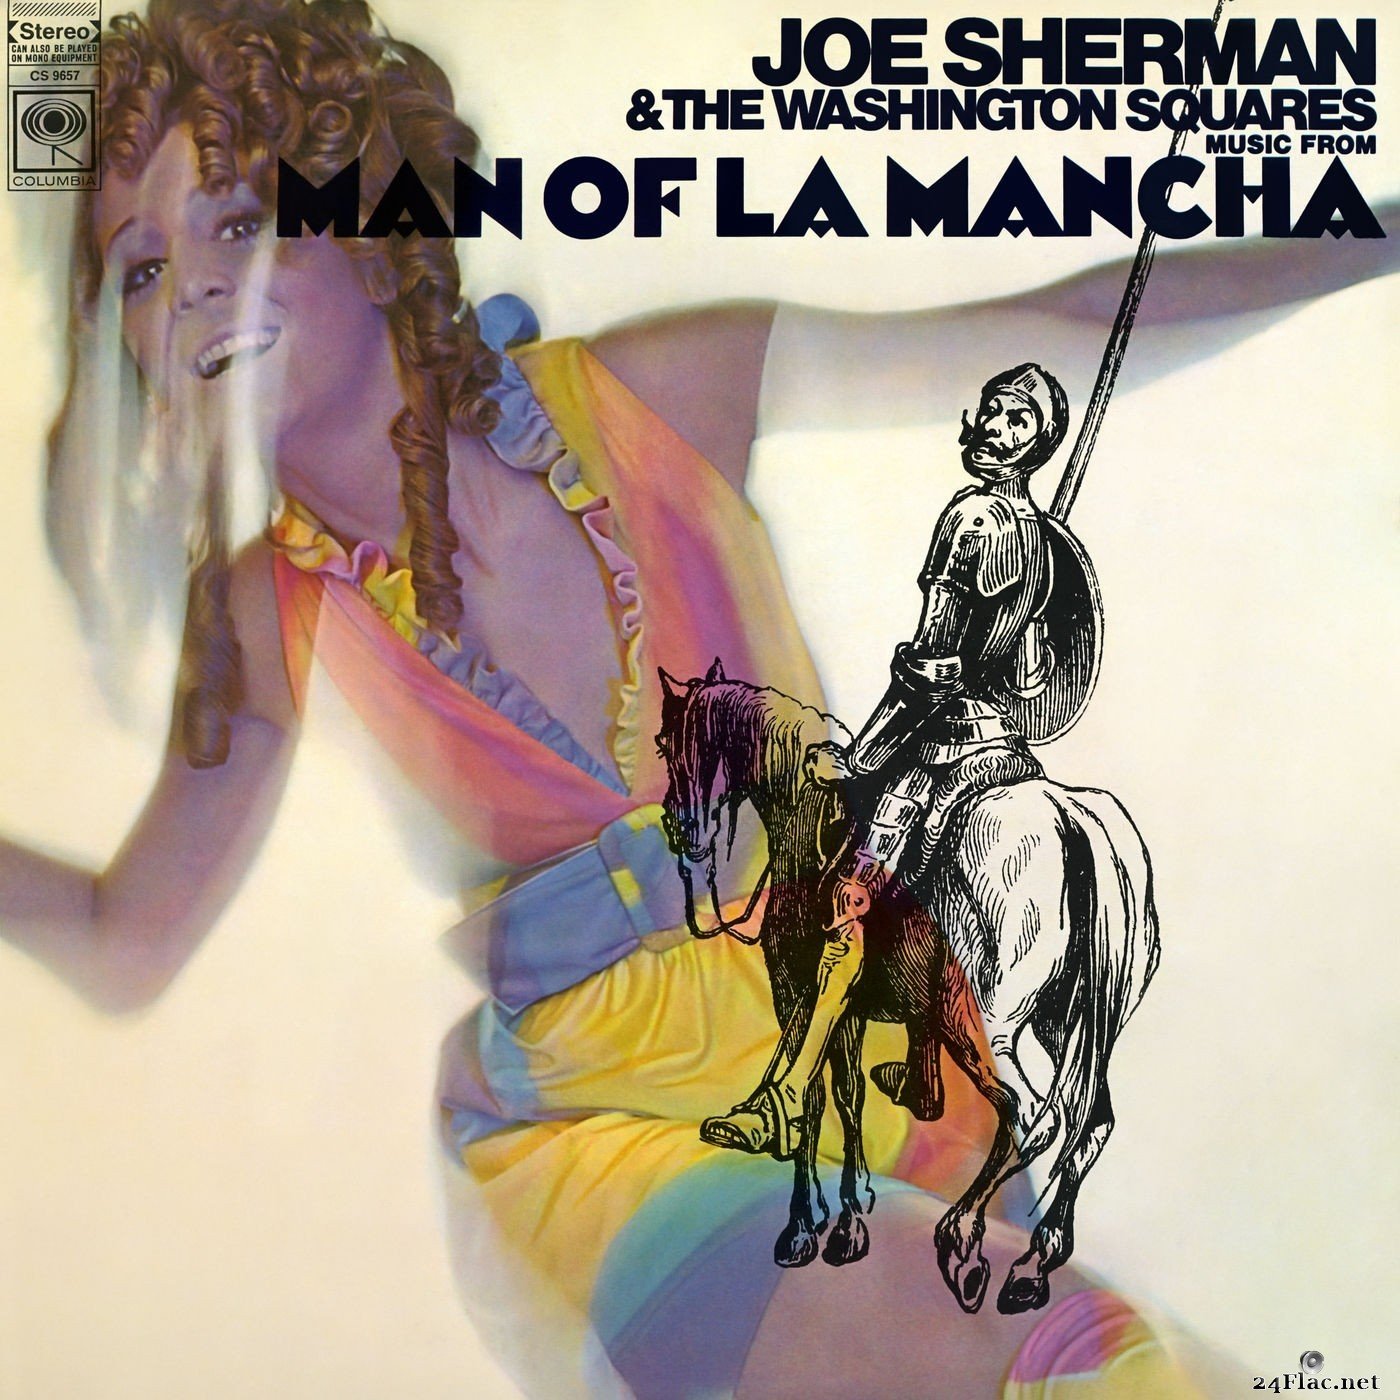 Joe Sherman & The Washington Squares - Music from Man of La Mancha (2018) Hi-Res